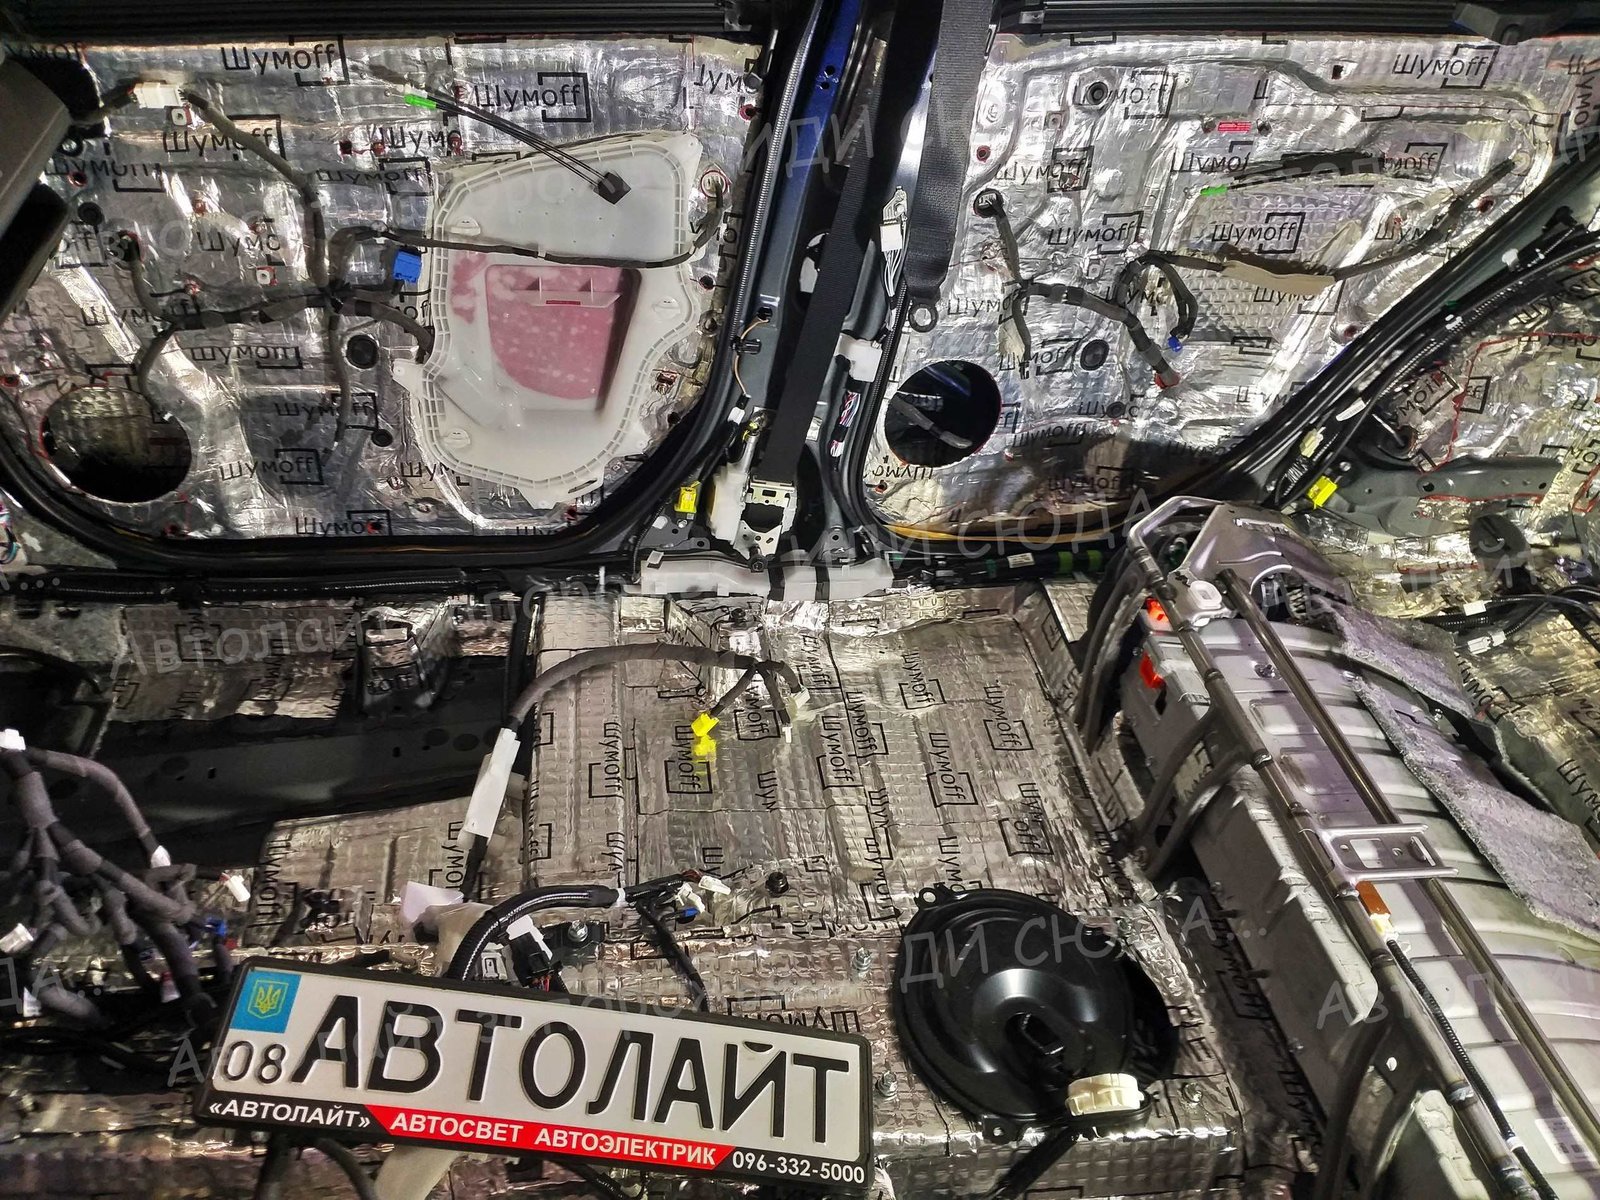 Фотогалерея шумоизоляция 44 🚩AVTOLIGHT🚩КАЧЕСТВО 💯‼ студия "Автолайт" Качественный автосвет в Запорожье